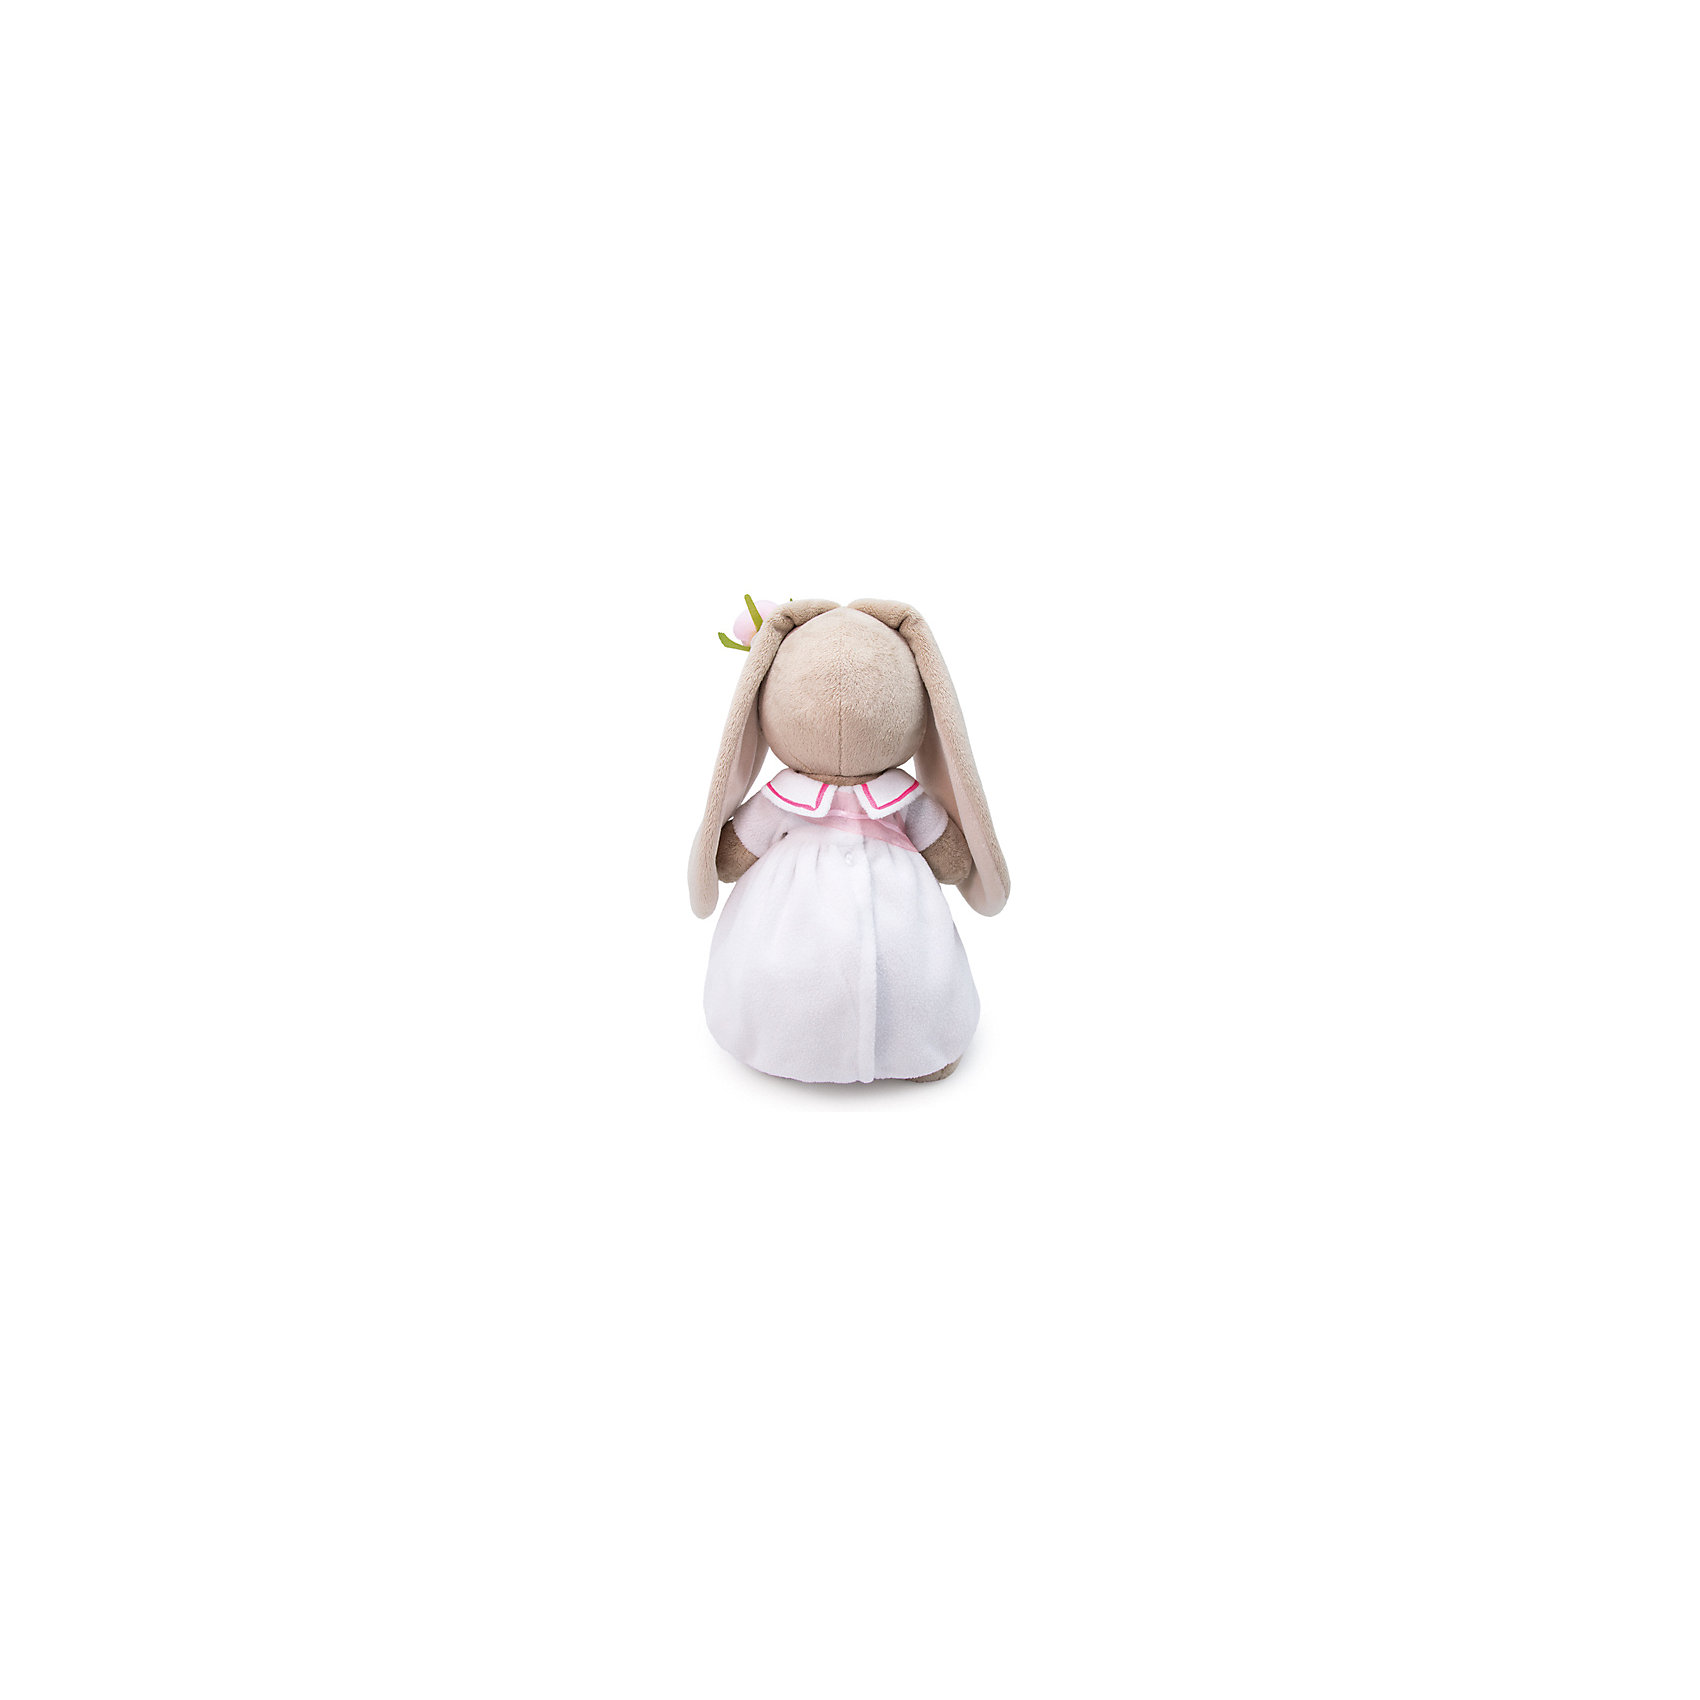 Мягкая игрушка Зайка Ми в платье с сумочкой, 25 см Budi Basa 12781390